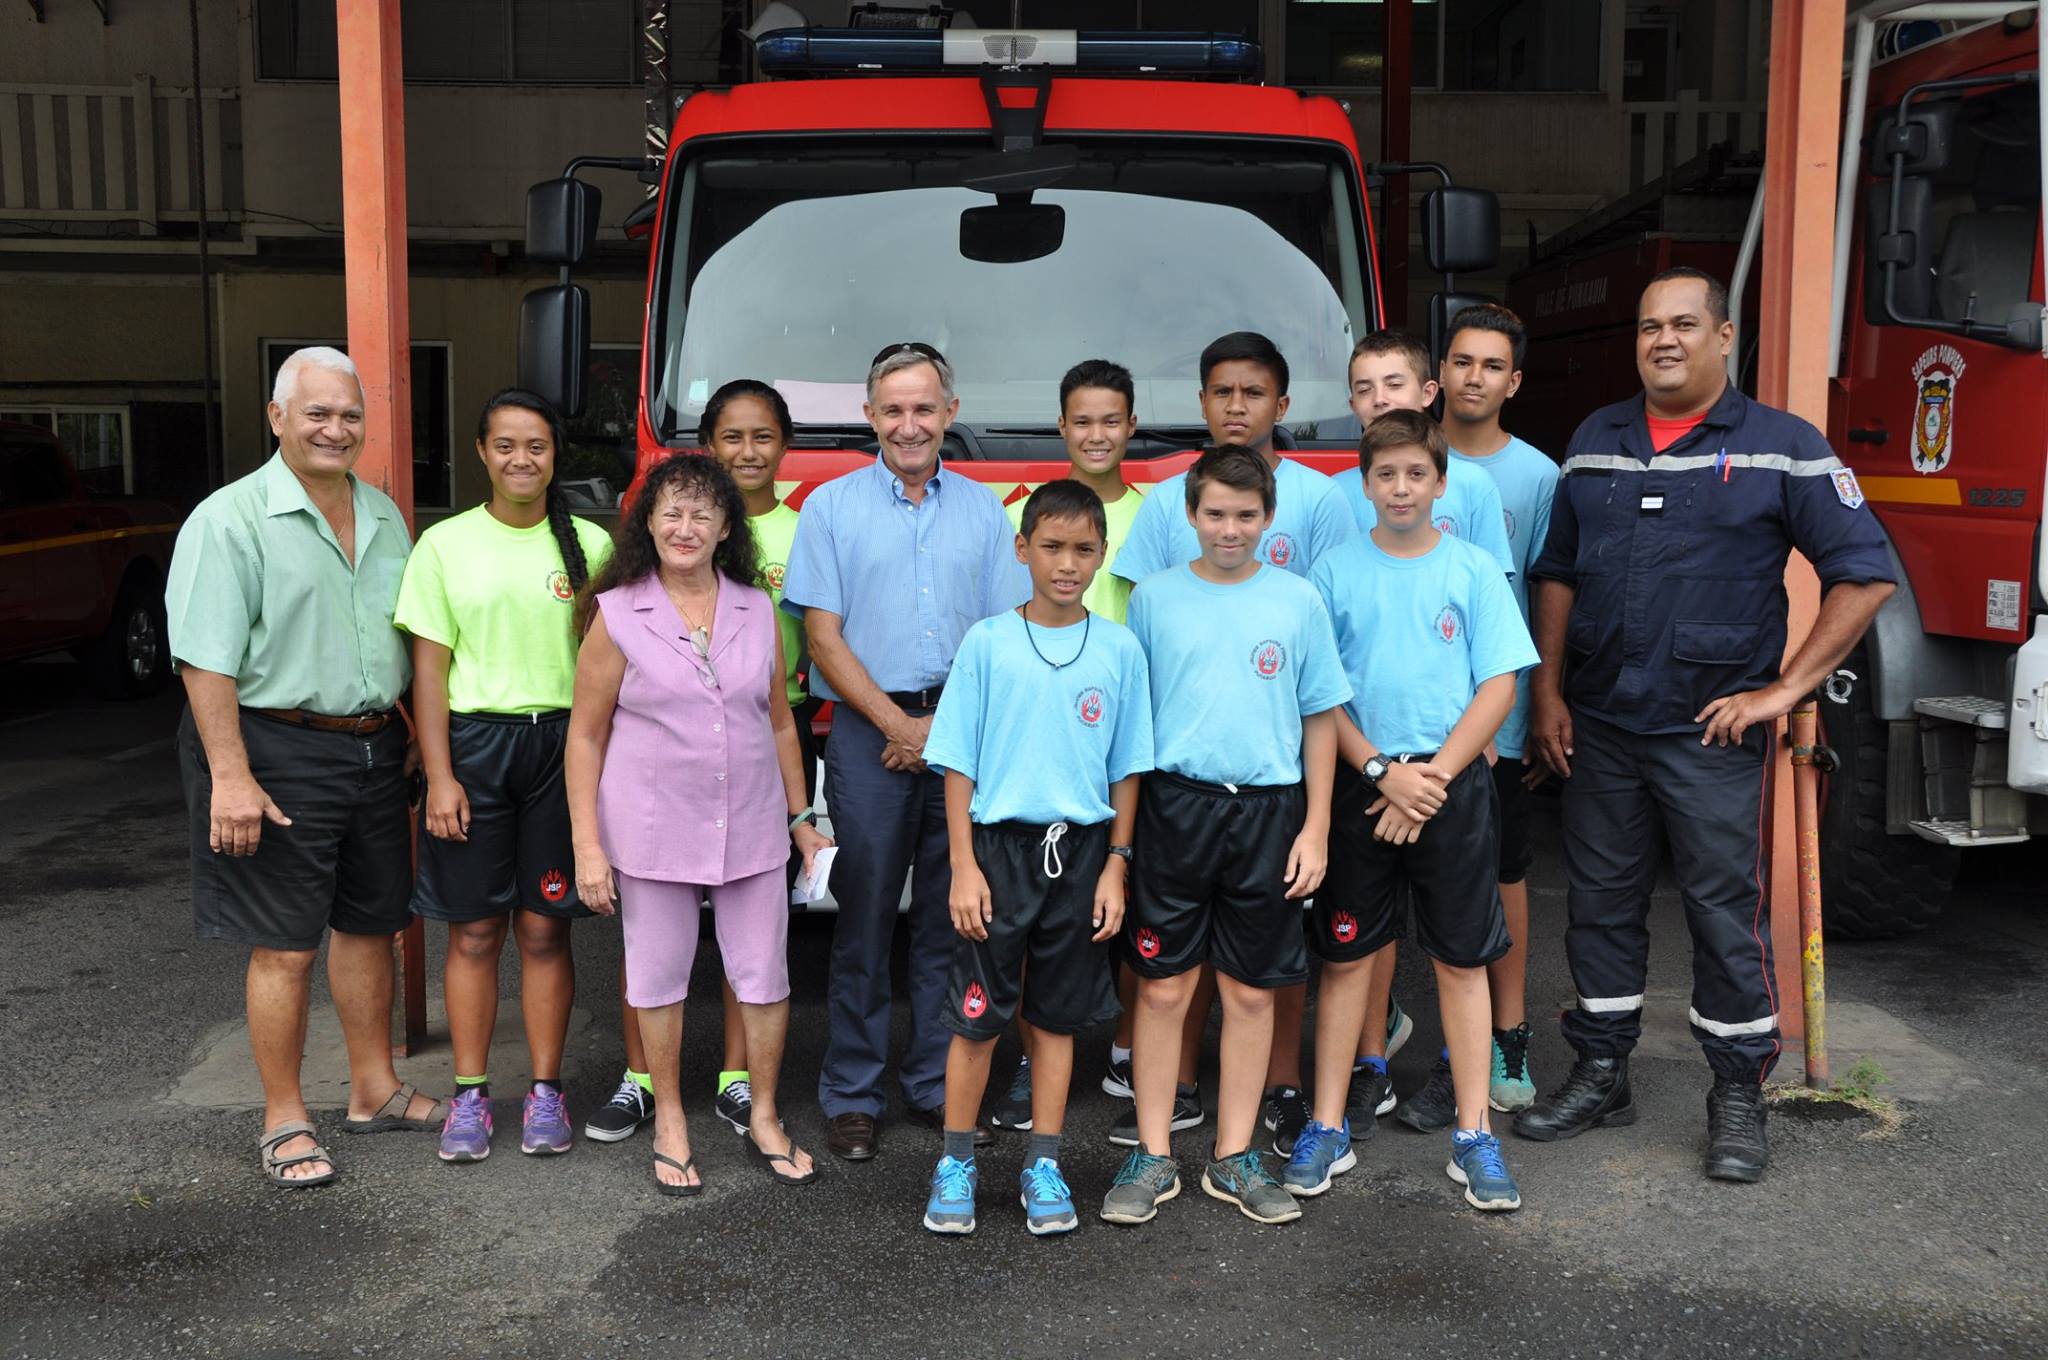 Punaauia : Les jeunes sapeurs-pompiers ont reçu 300 000 francs